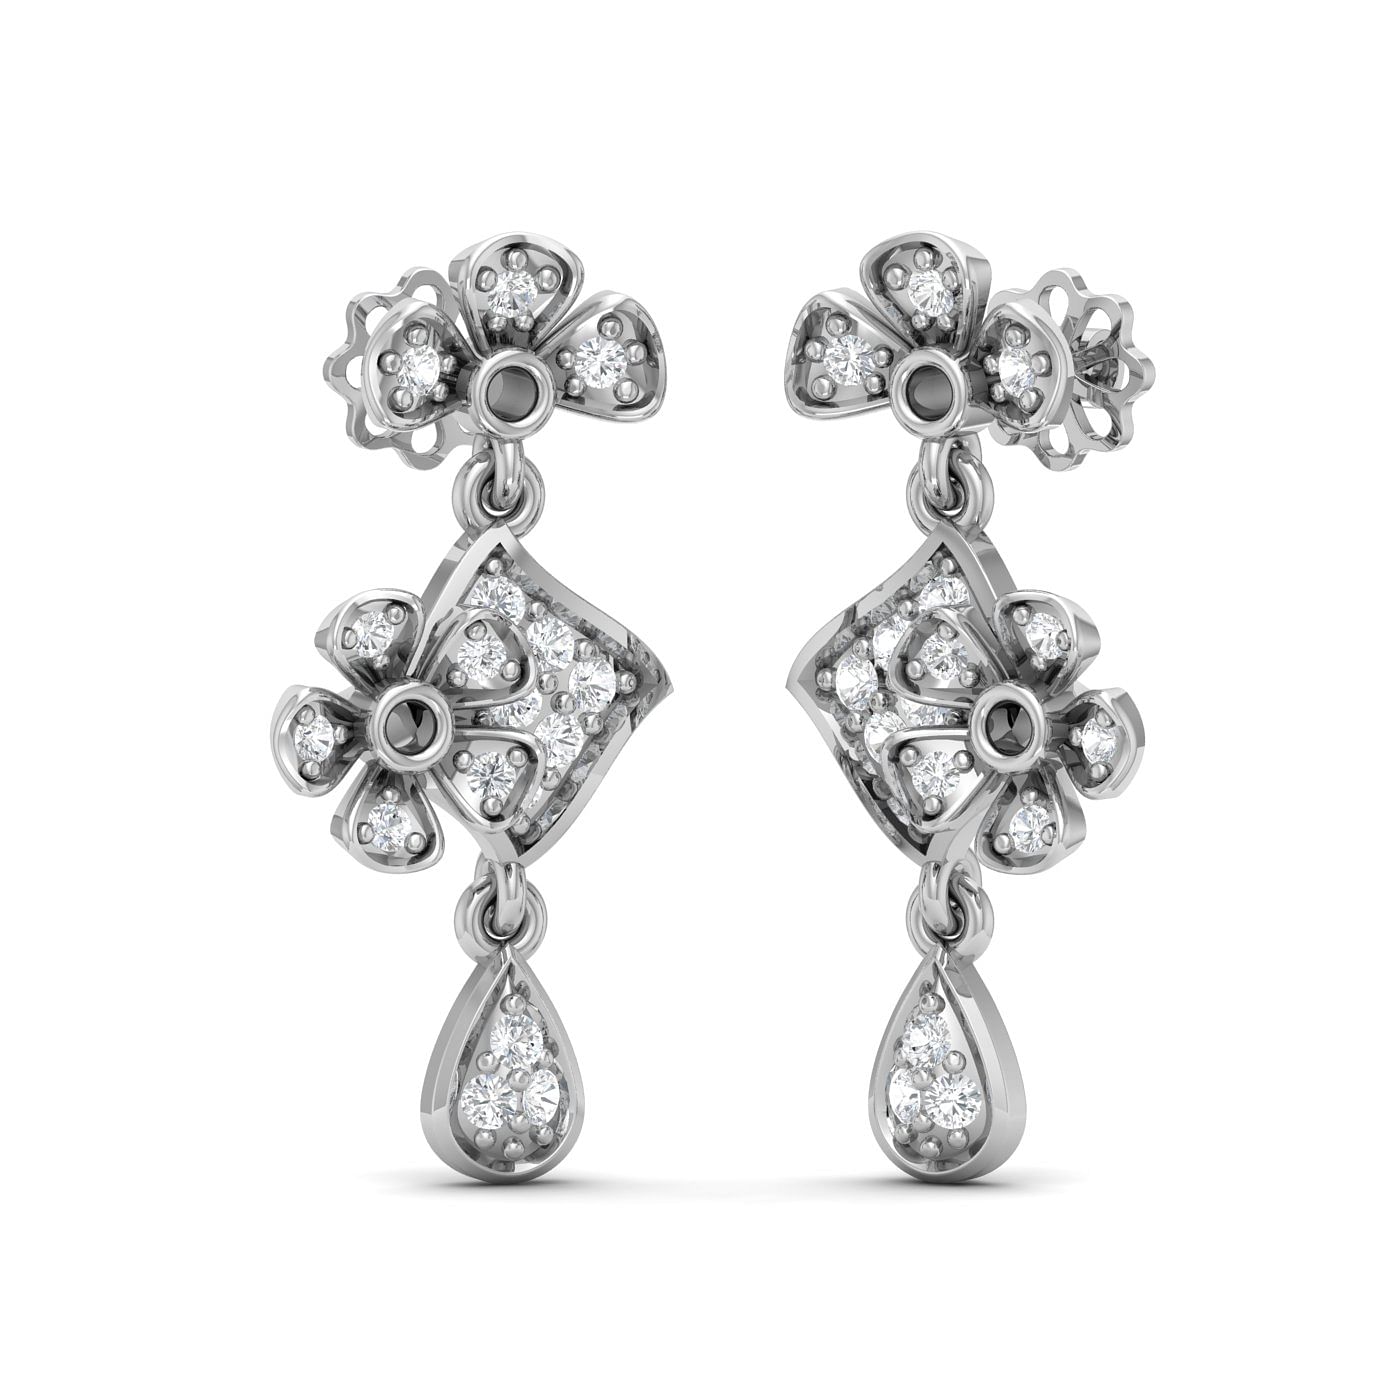 Flower style drop diamond earring set in white gold